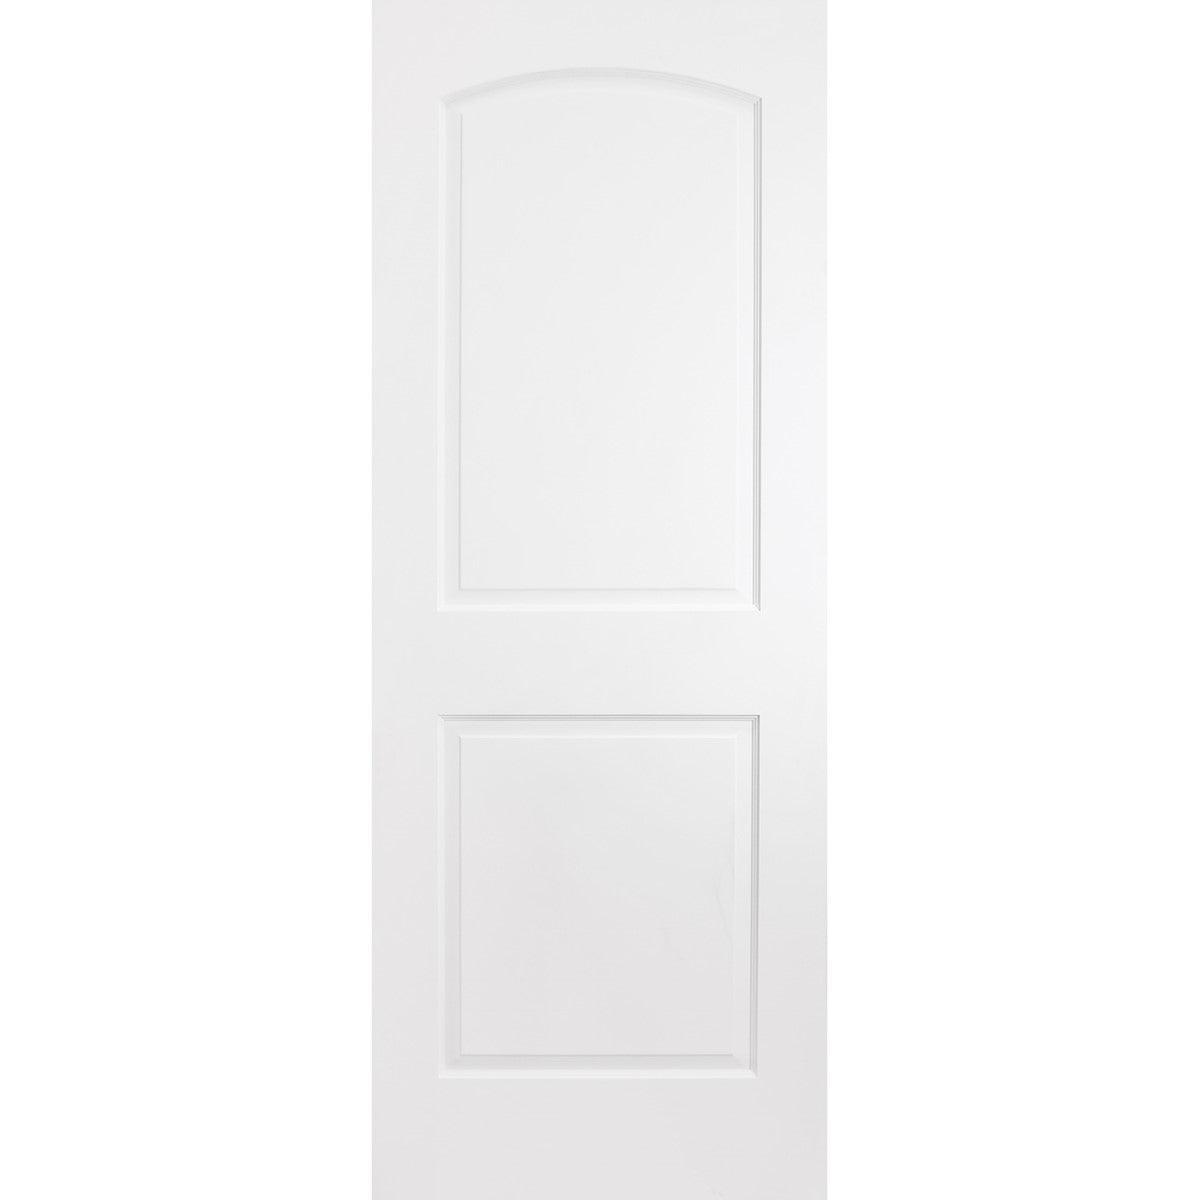 Solid Wood Interior Door Slab (2 Panel Archtop, Primed) - Pease Doors: The Door Store